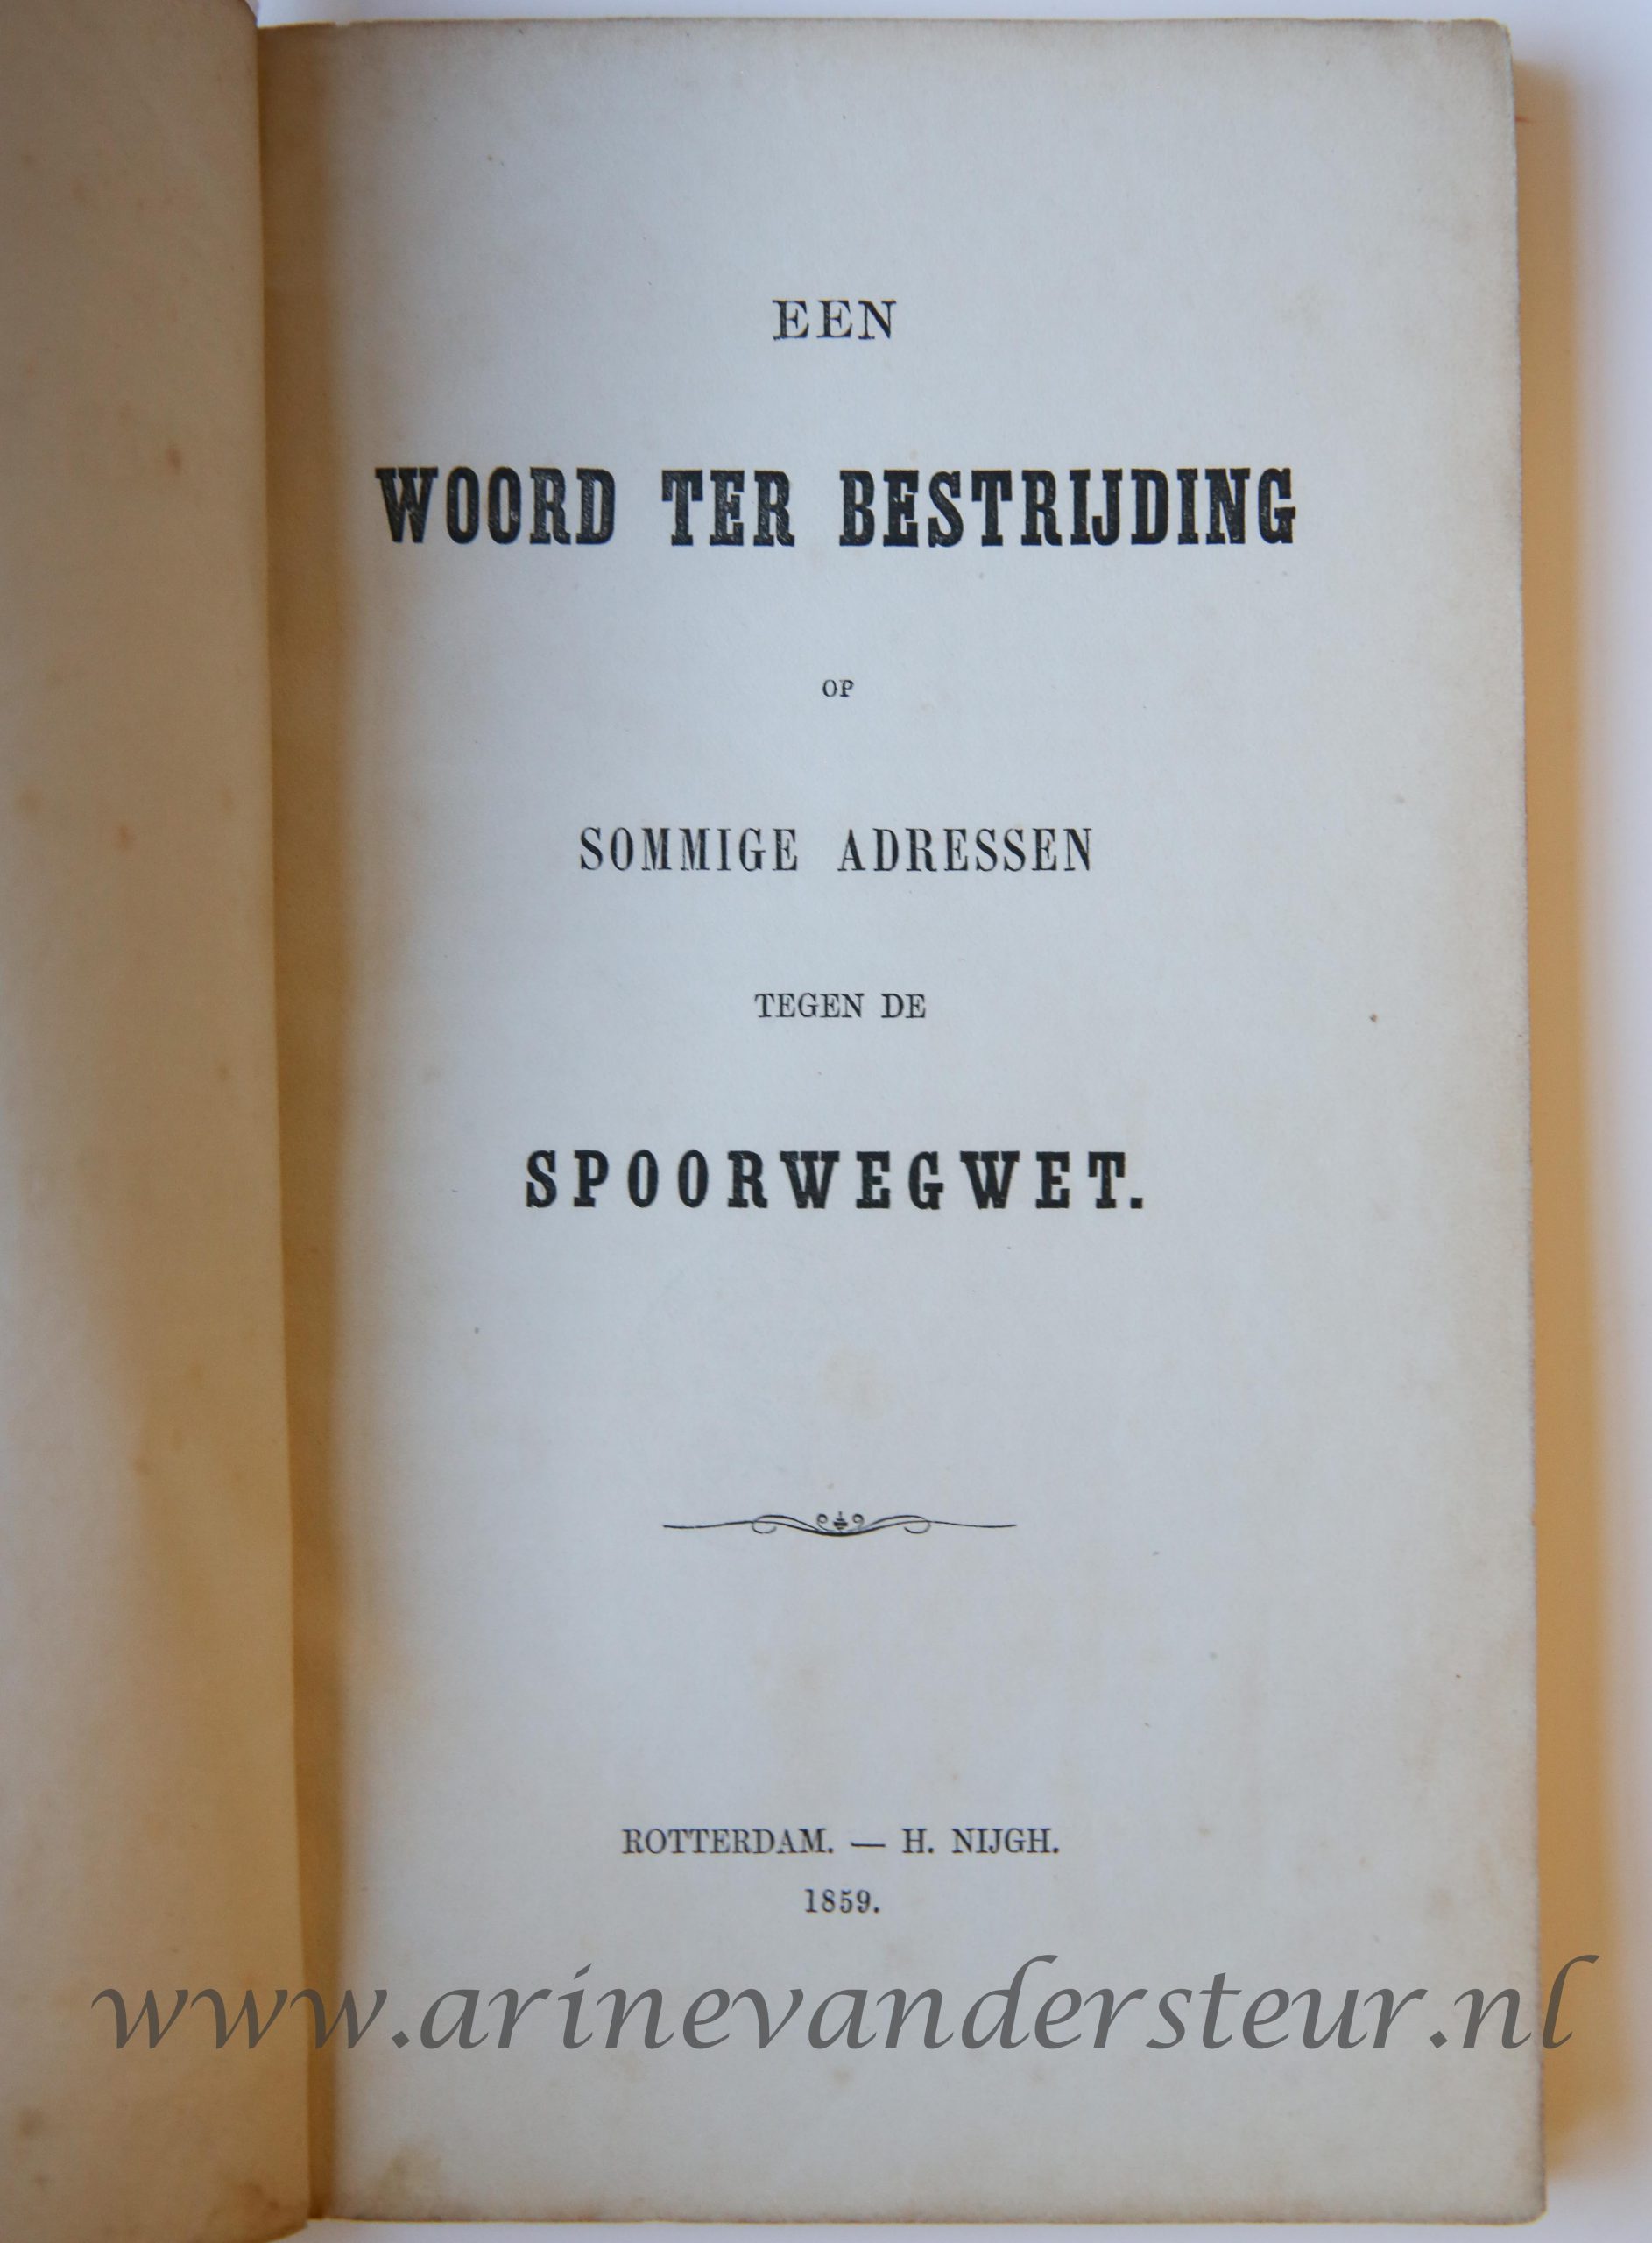 Een Woord ter bestrijding op sommige adressen tegen de Spoorwegwet, Rotterdam - H. Nijgh 1859, 20 pp.